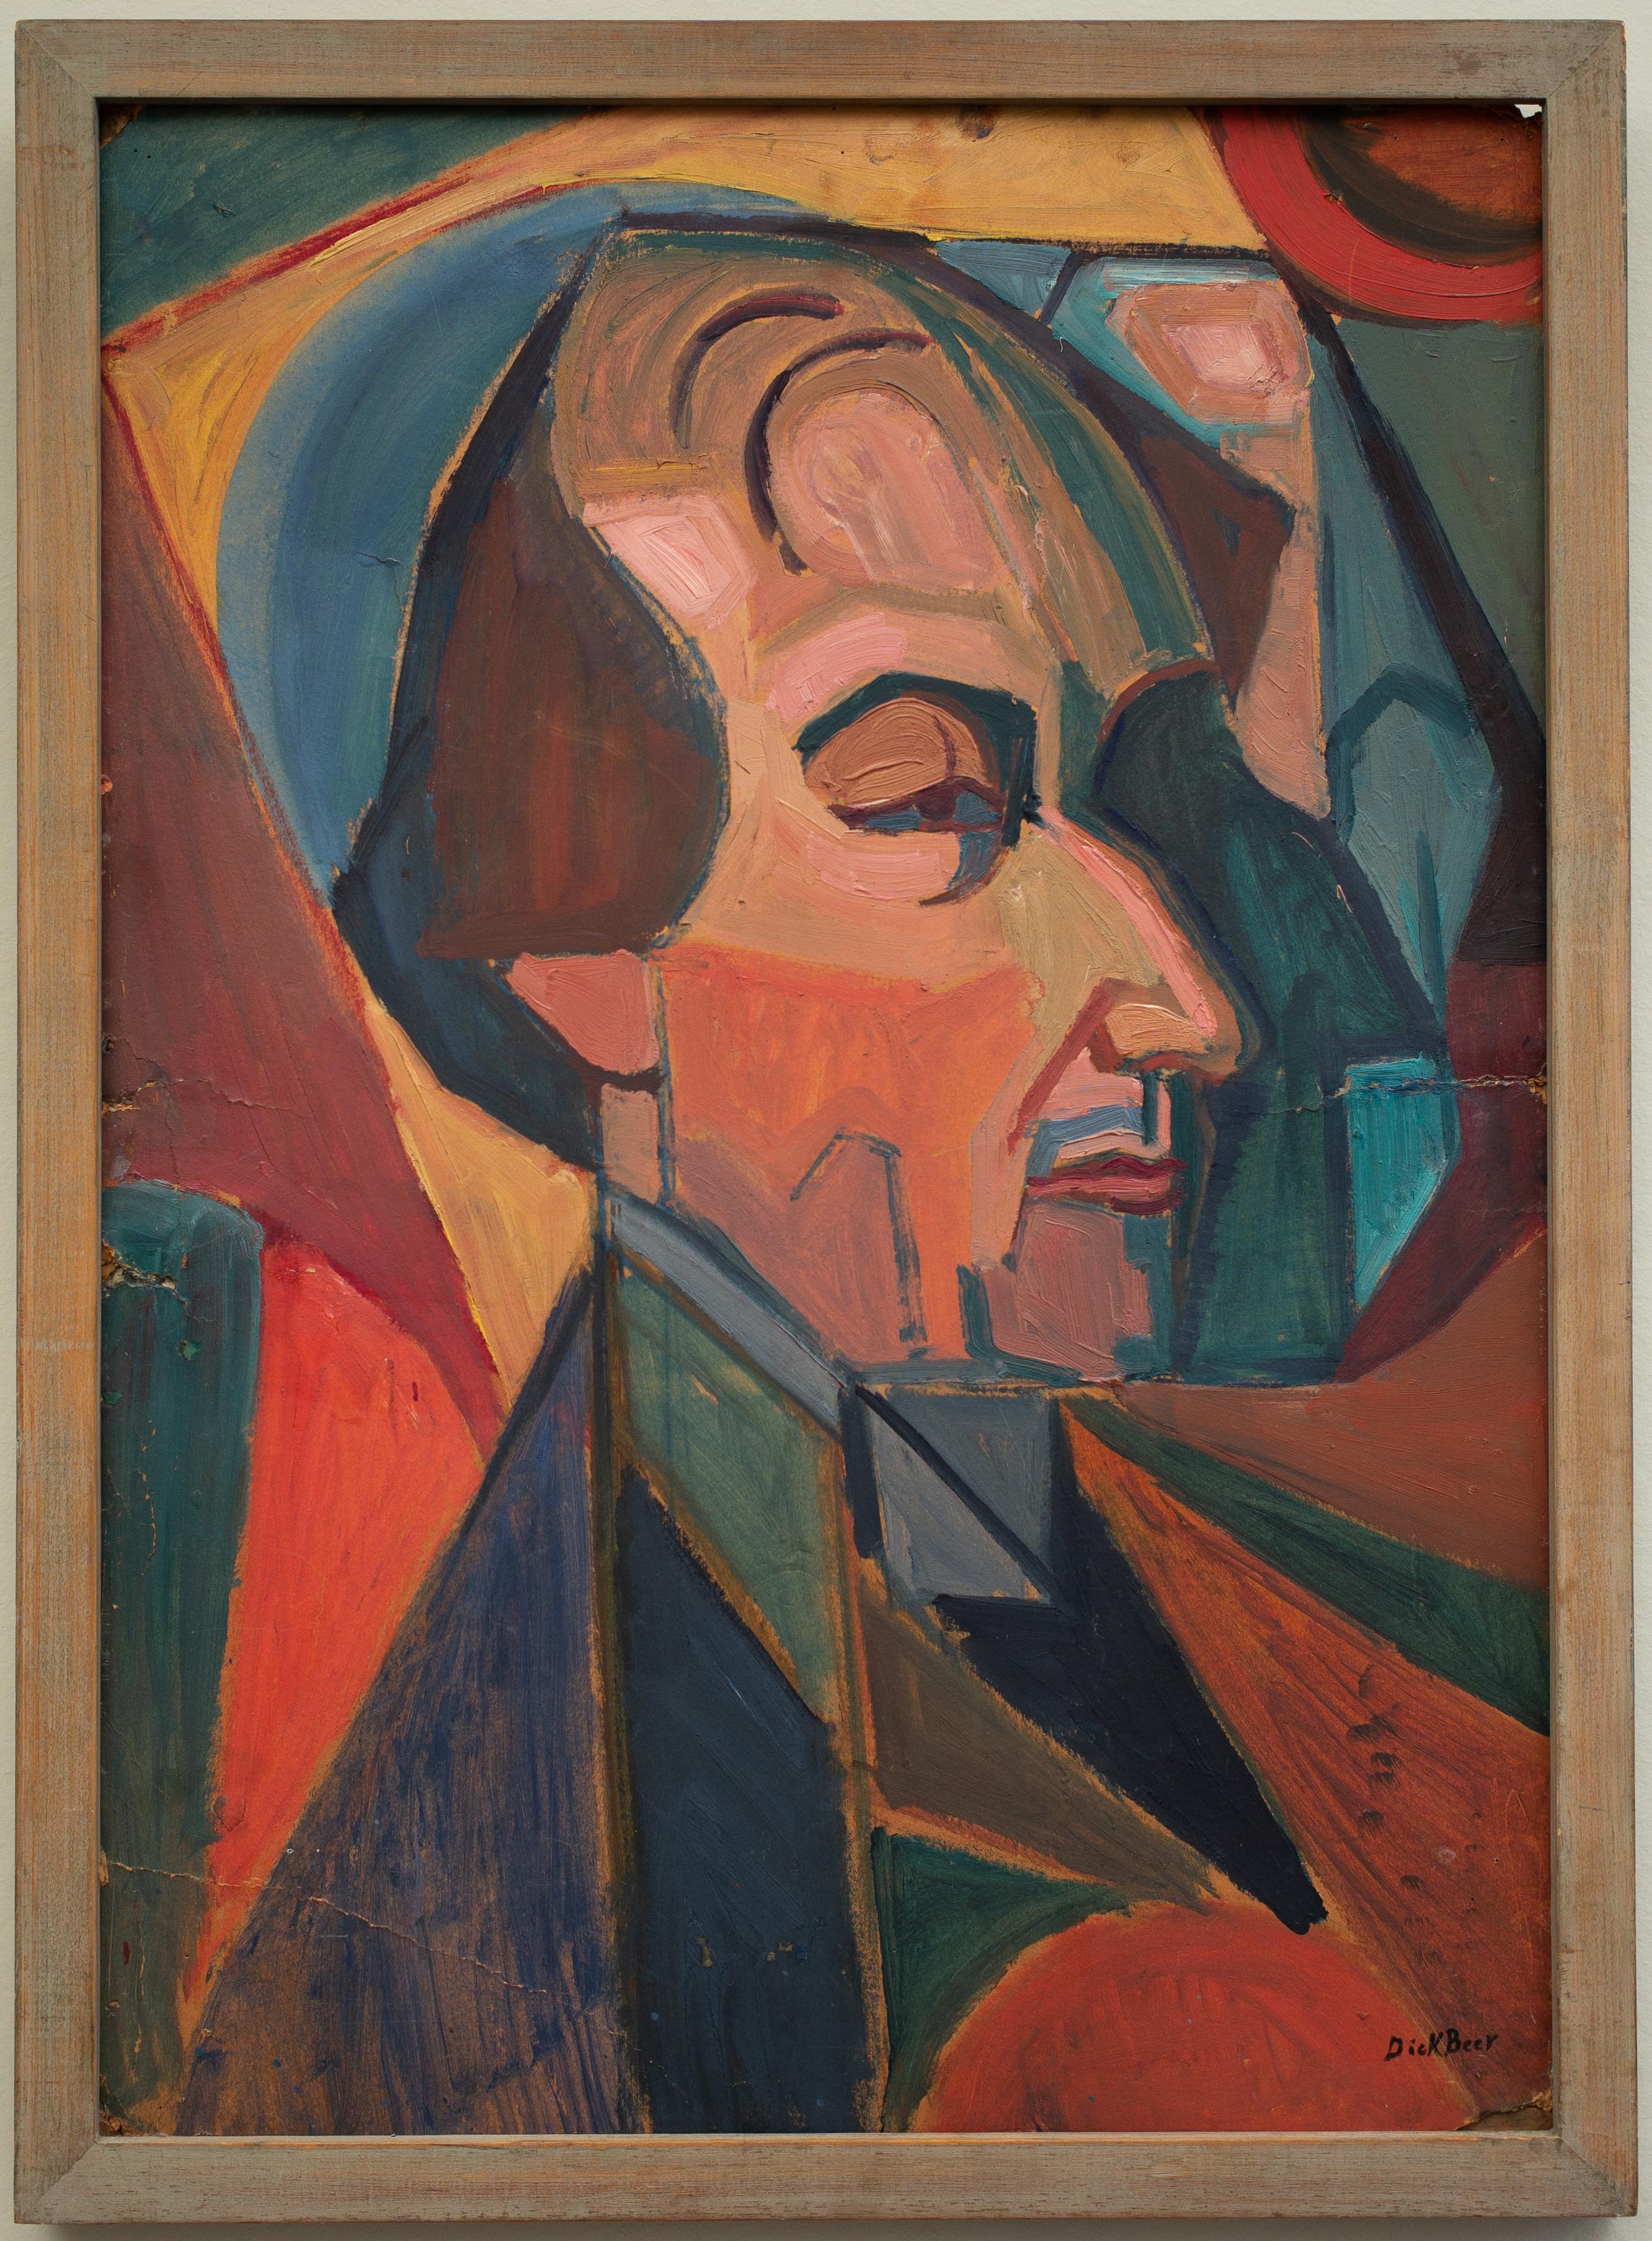 Kubistisches Gemälde aus den Jahren 1918-19, Porträt von Dr. Mens III – Painting von Dick Beer